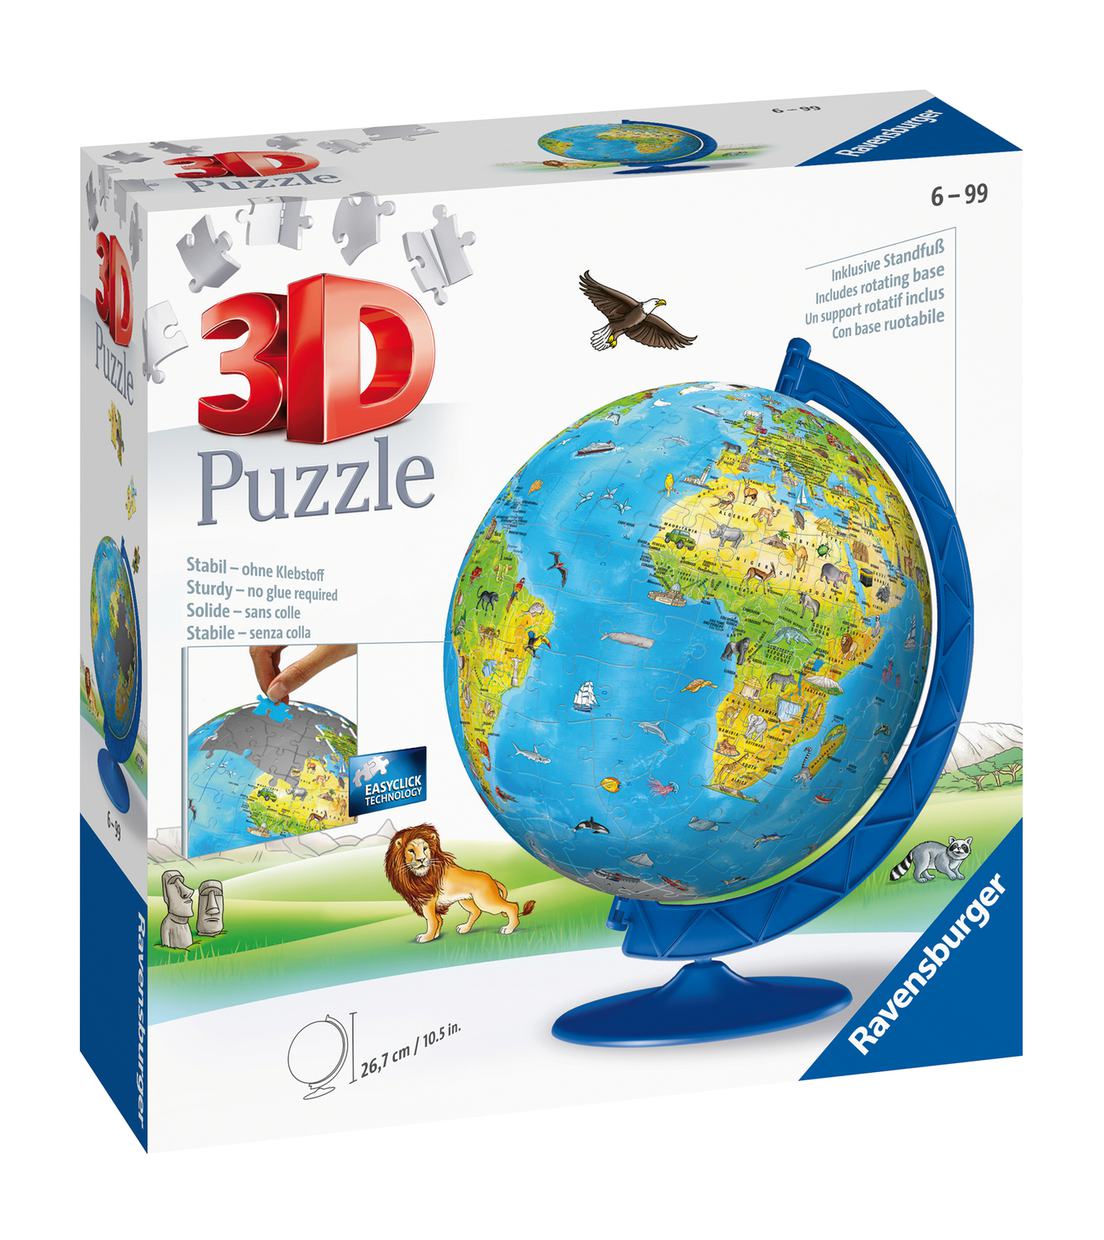 XXL Kinder globe Engels  3D Puzzel  180 stukjes